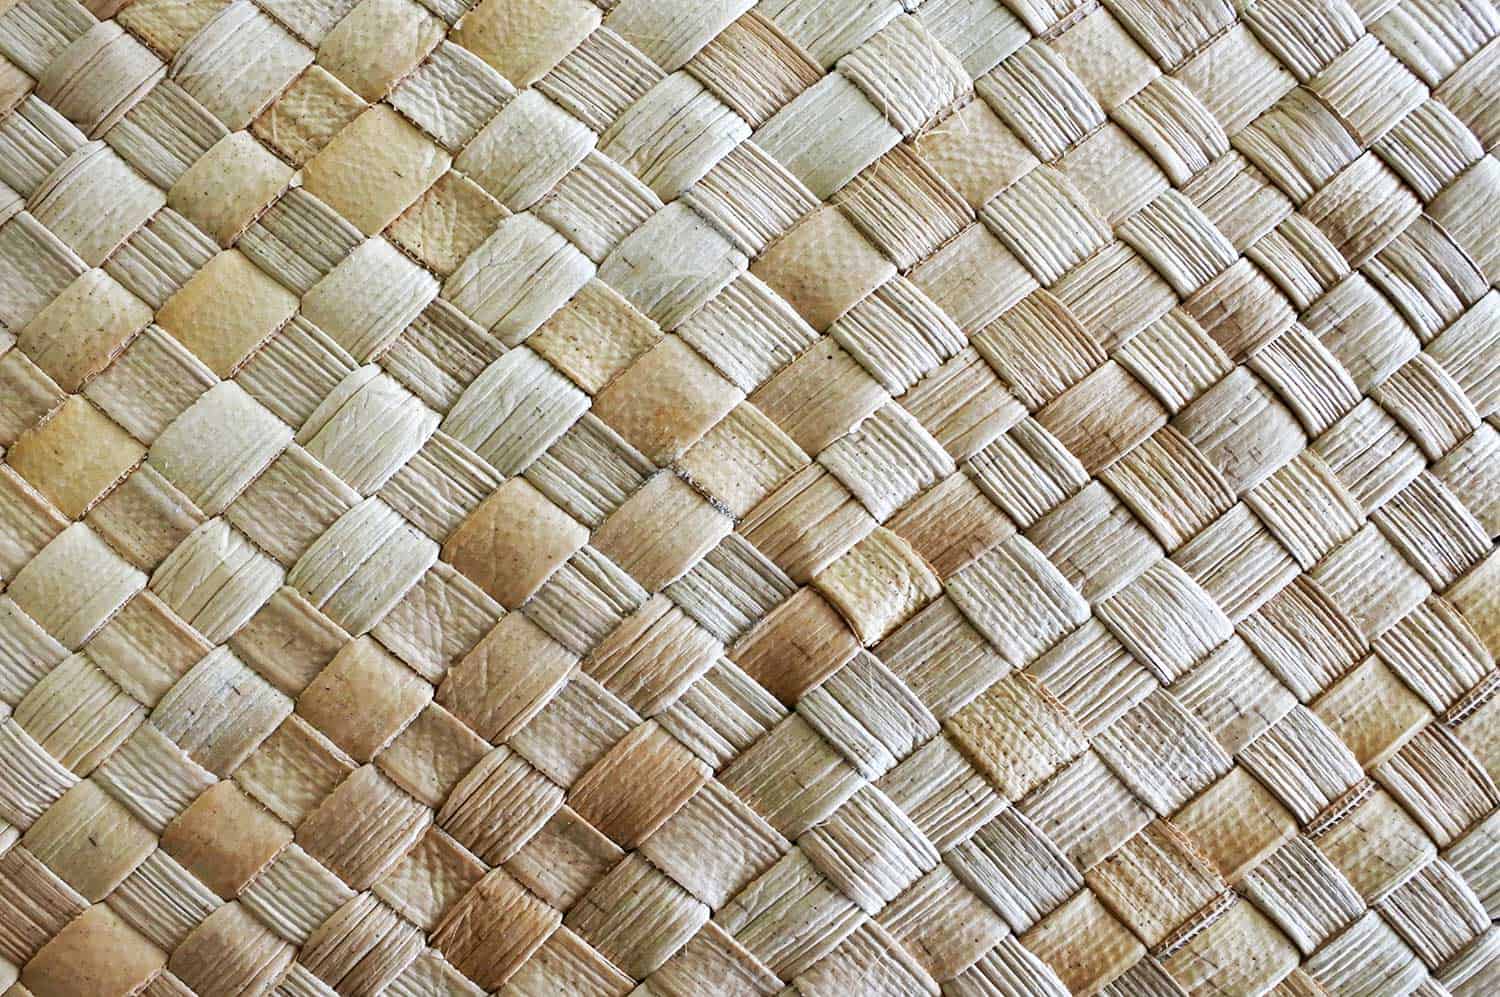 Fijian coconut palm leaves weaving